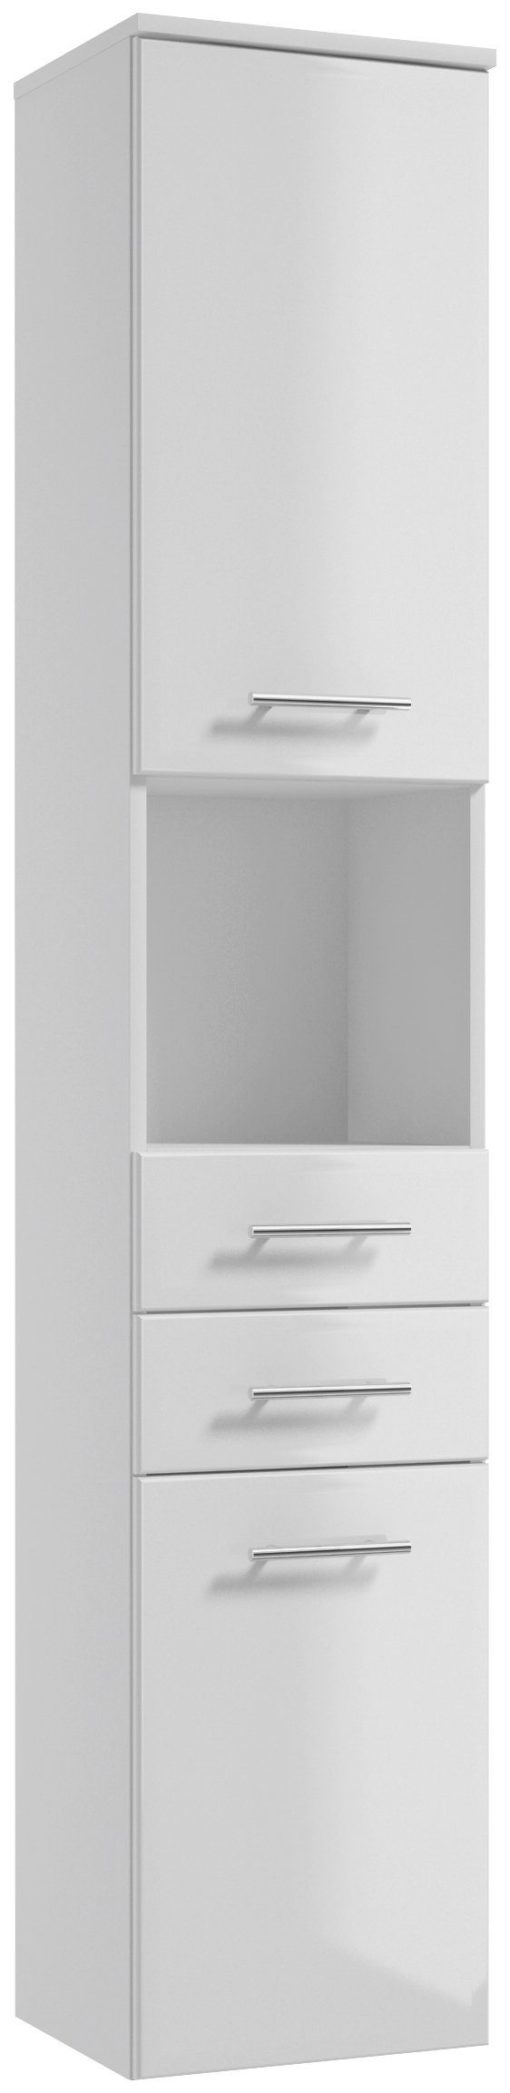 Wąska szafka łazienkowa słupek, biała front w połysku